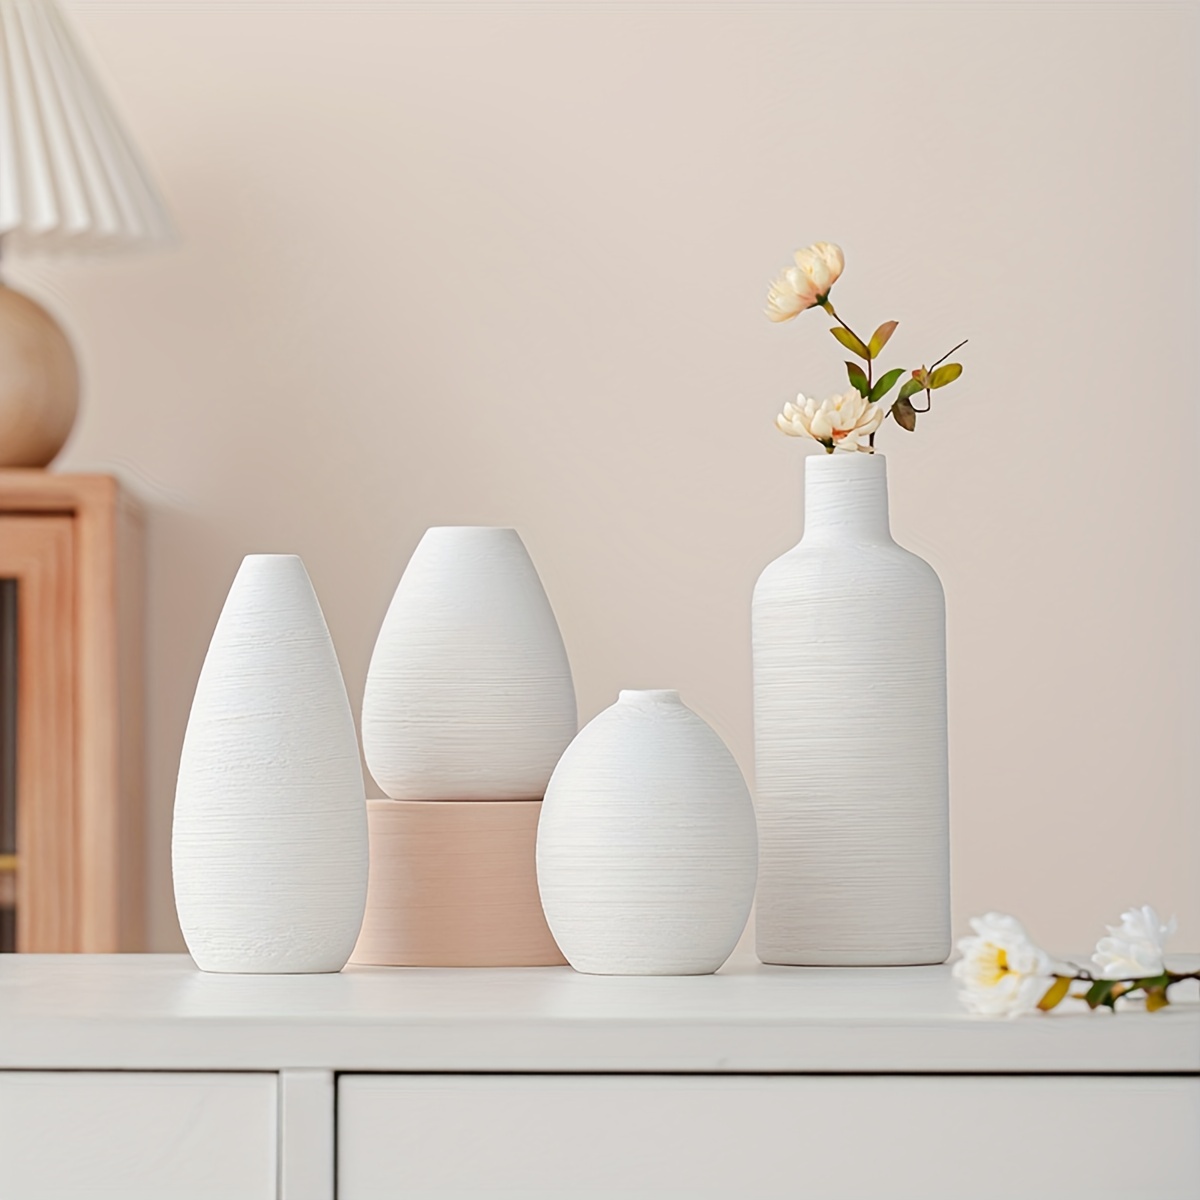  Small Ceramic Flower Vases Set of 4, Bud Vase, Decorative  Modern Floral Vase : Home & Kitchen